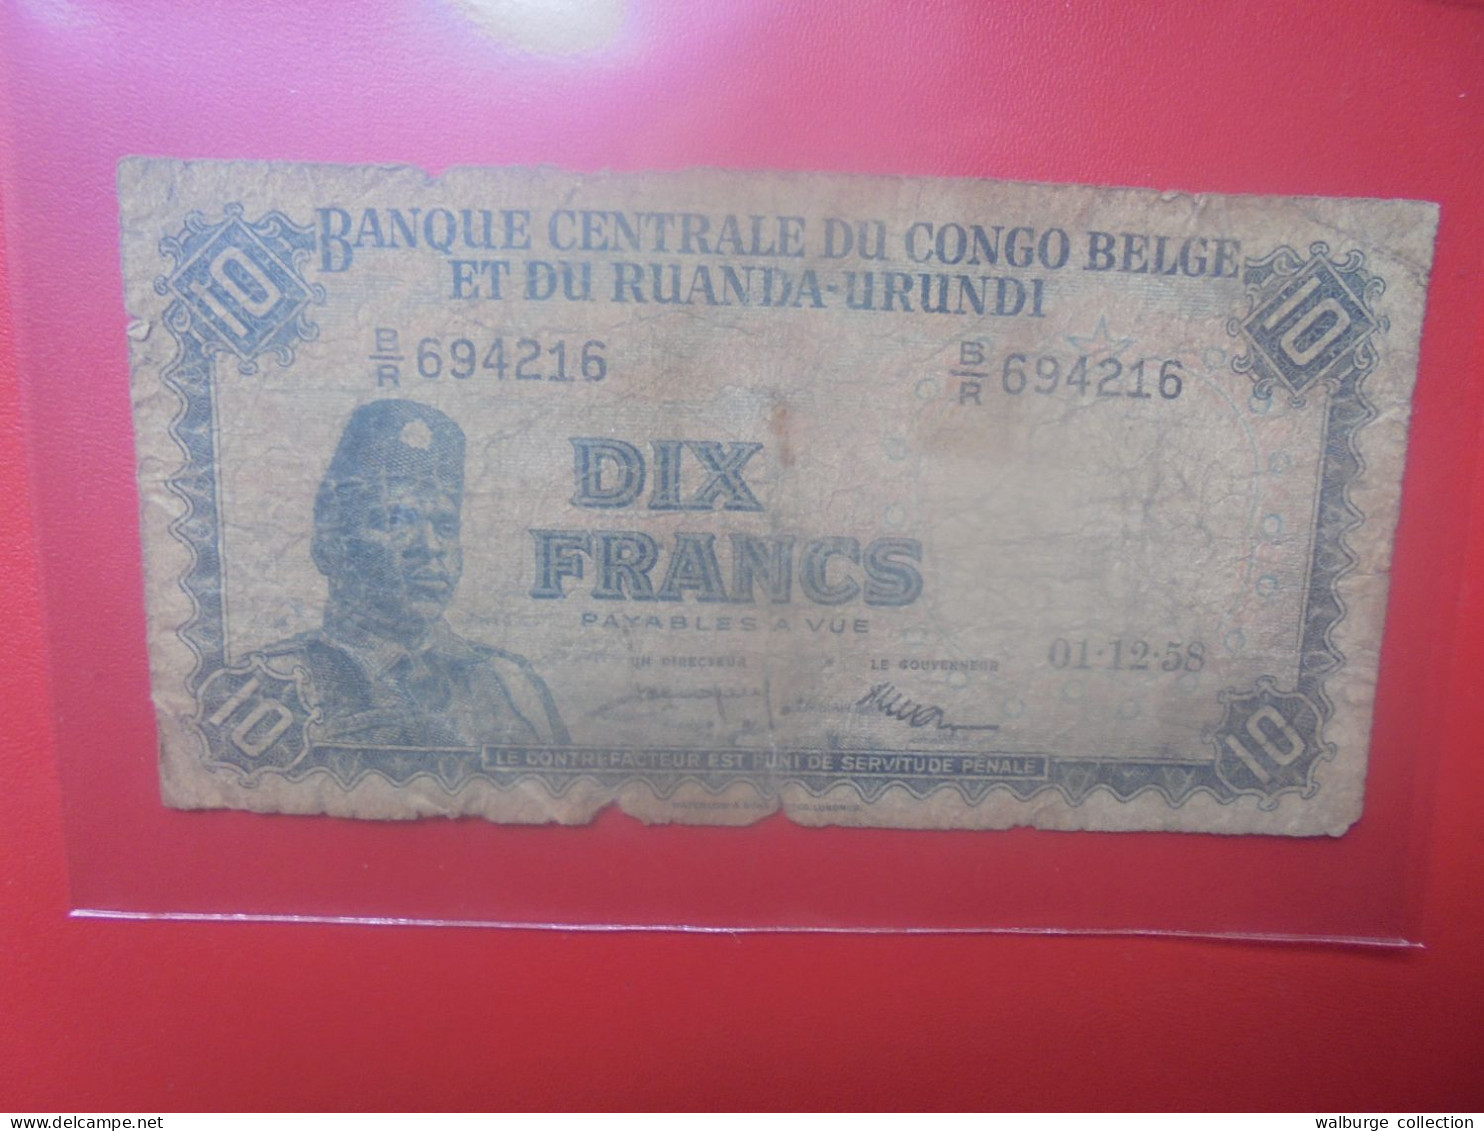 CONGO BELGE 10 FRANCS 1-12-58 Circuler (B.33) - Banca Del Congo Belga